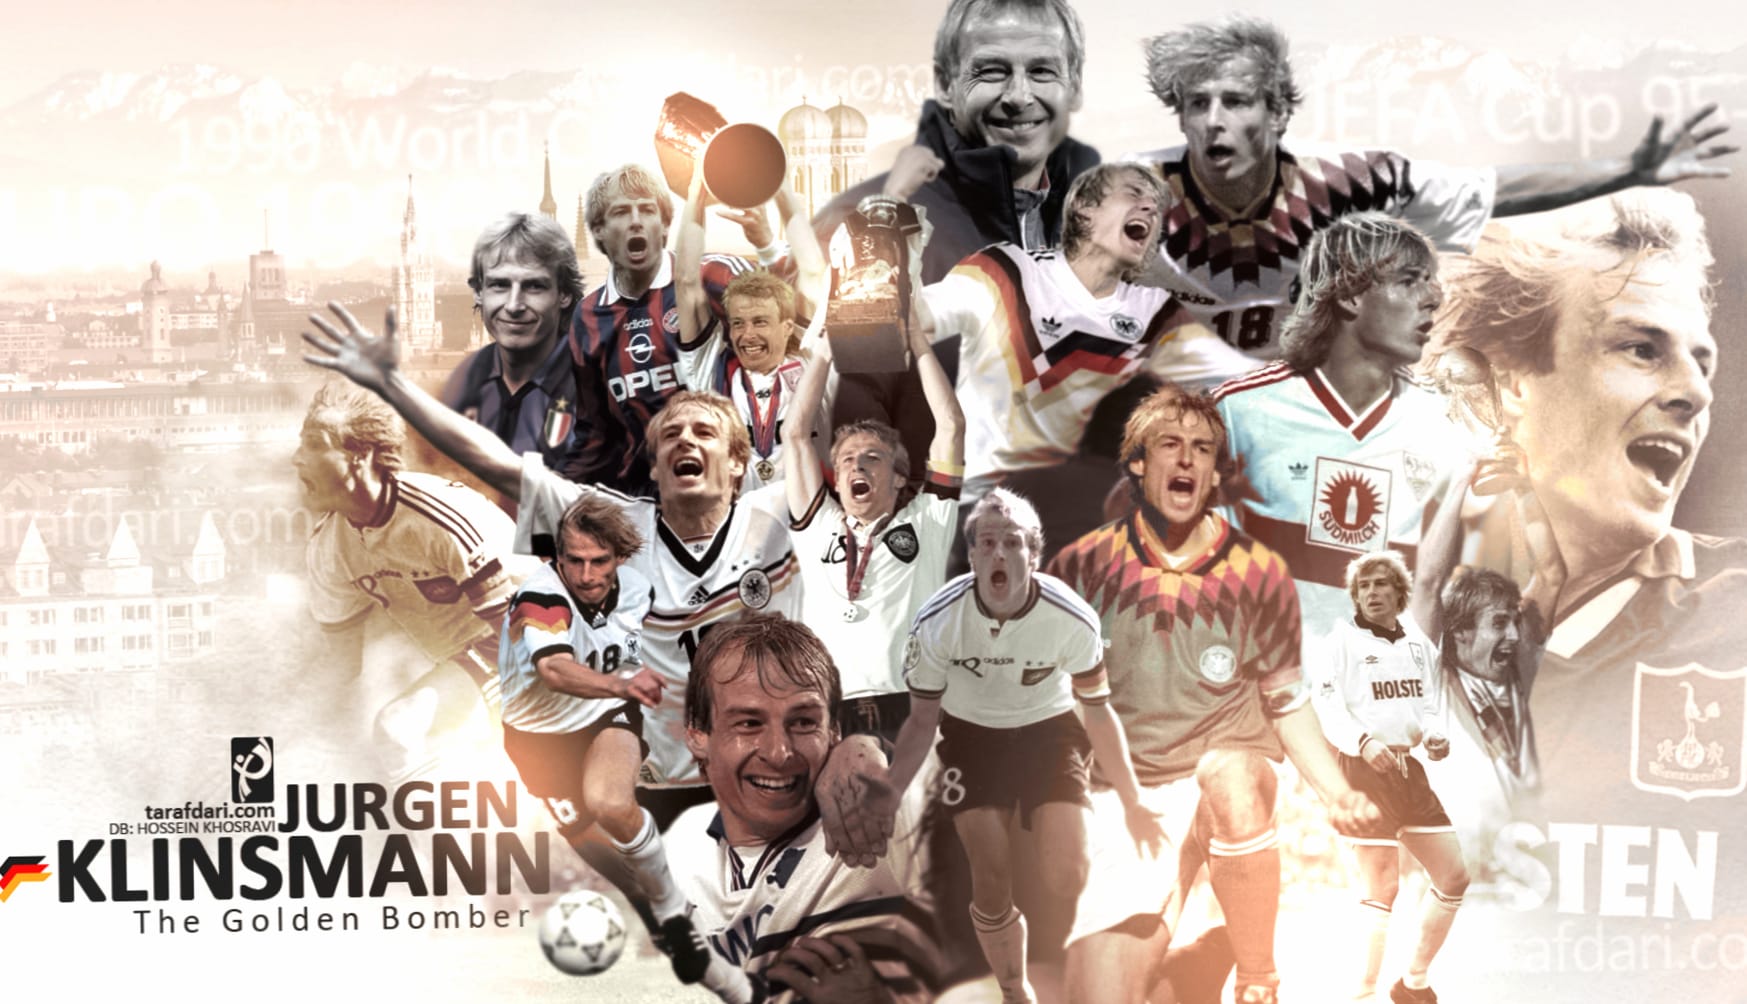 Jurgen Klinsmann at 640 x 1136 iPhone 5 size wallpapers HD quality